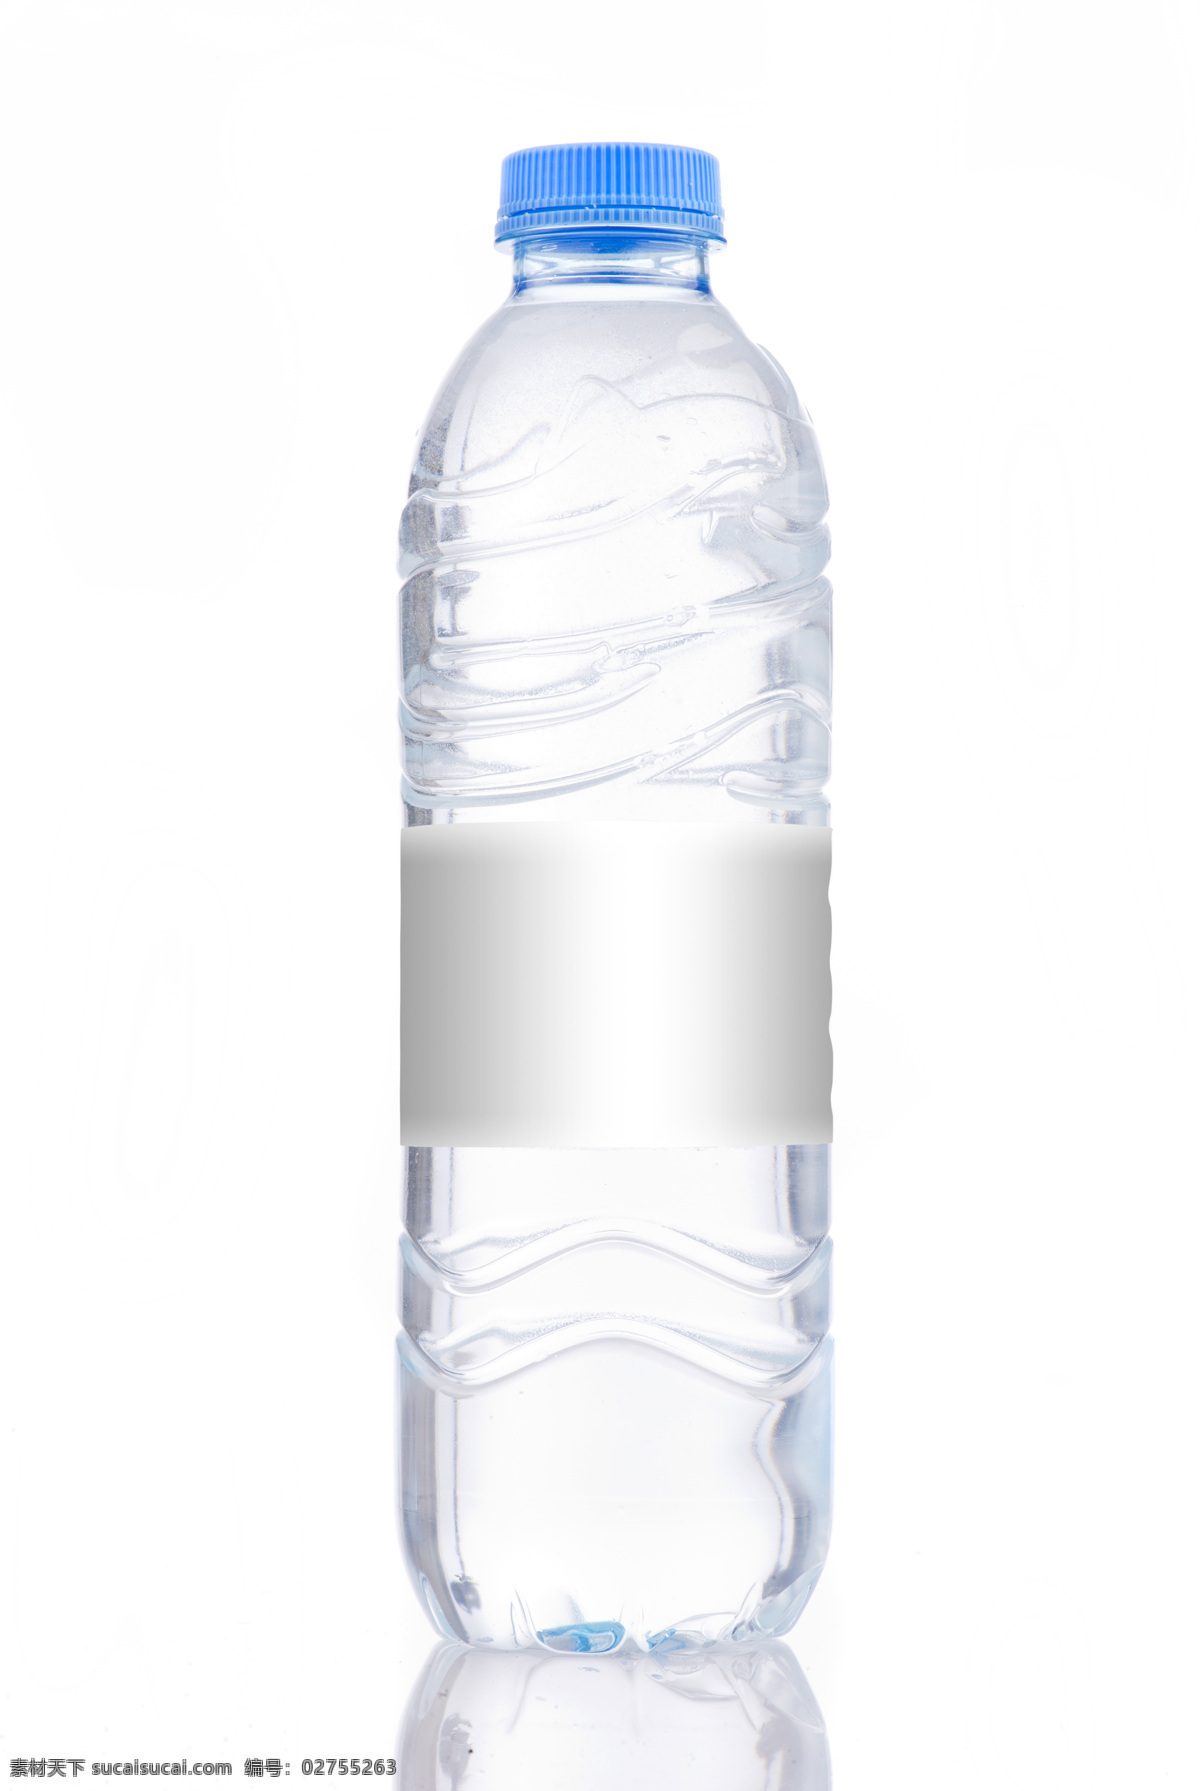 矿泉水瓶 包装设计 矿泉水 水瓶 瓶子 包装模板 空白包装背景 产品包装 其他类别 生活百科